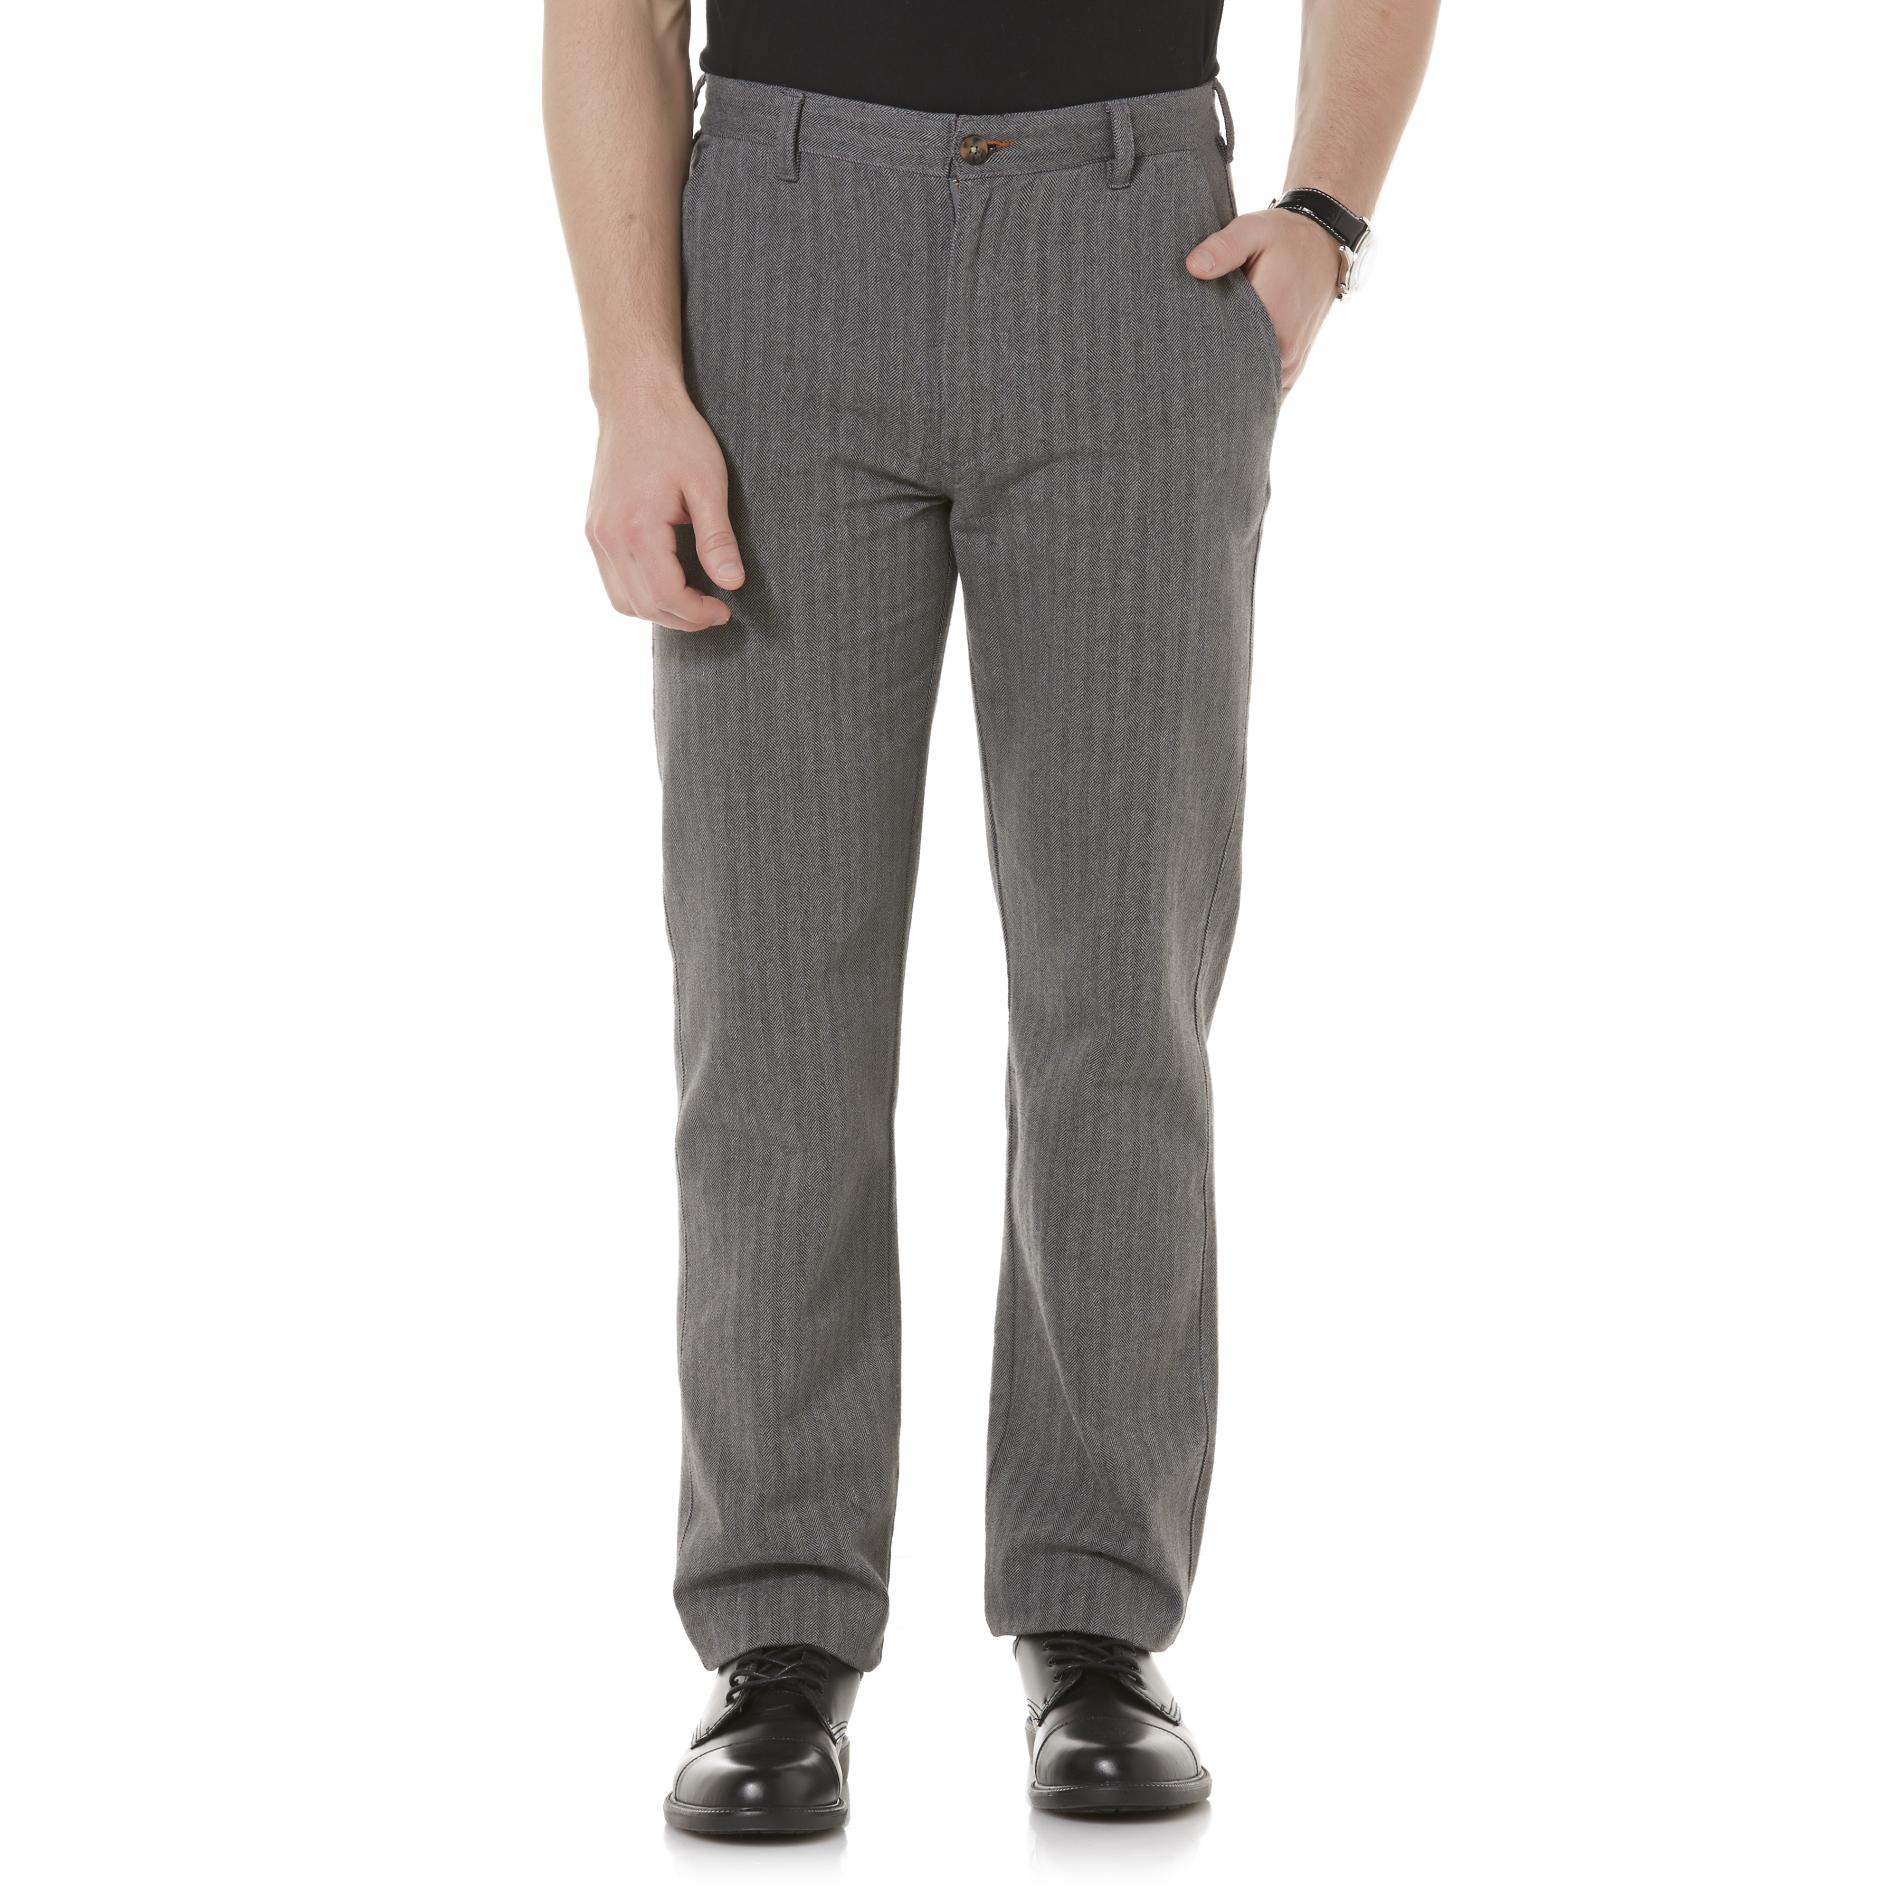 Covington Men's Woven Pants - Herringbone - Clothing - Men's Clothing ...